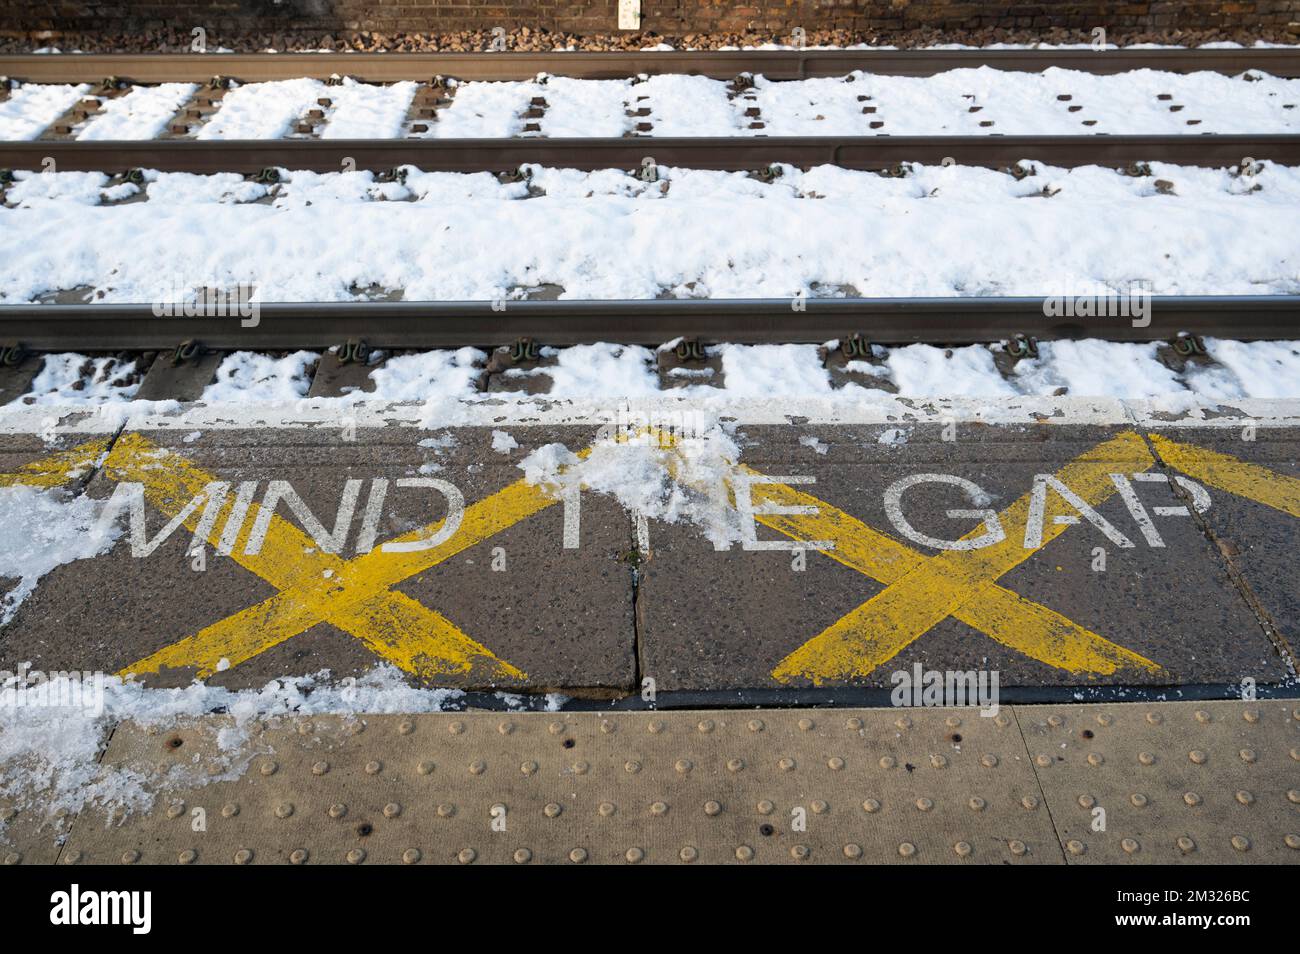 Stazione di London Fields, Hackney, Londra. Inghilterra; Regno Unito. In una giornata di sciopero in treno, i binari e la piattaforma dicono "Mind the Gap" nella neve. Foto Stock